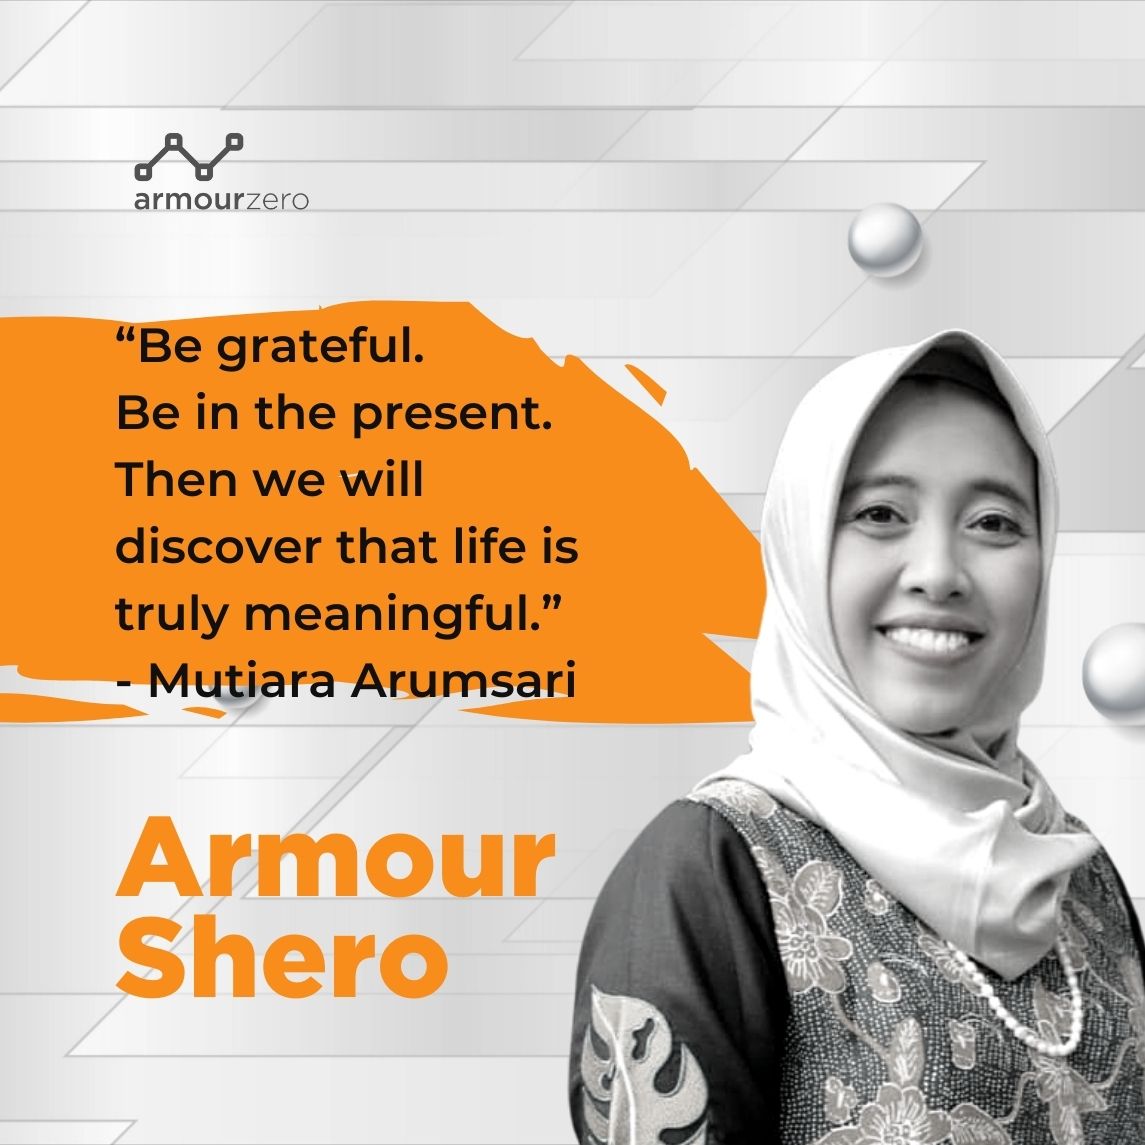 Mutiara Arumsari Quotes for ArmourZero